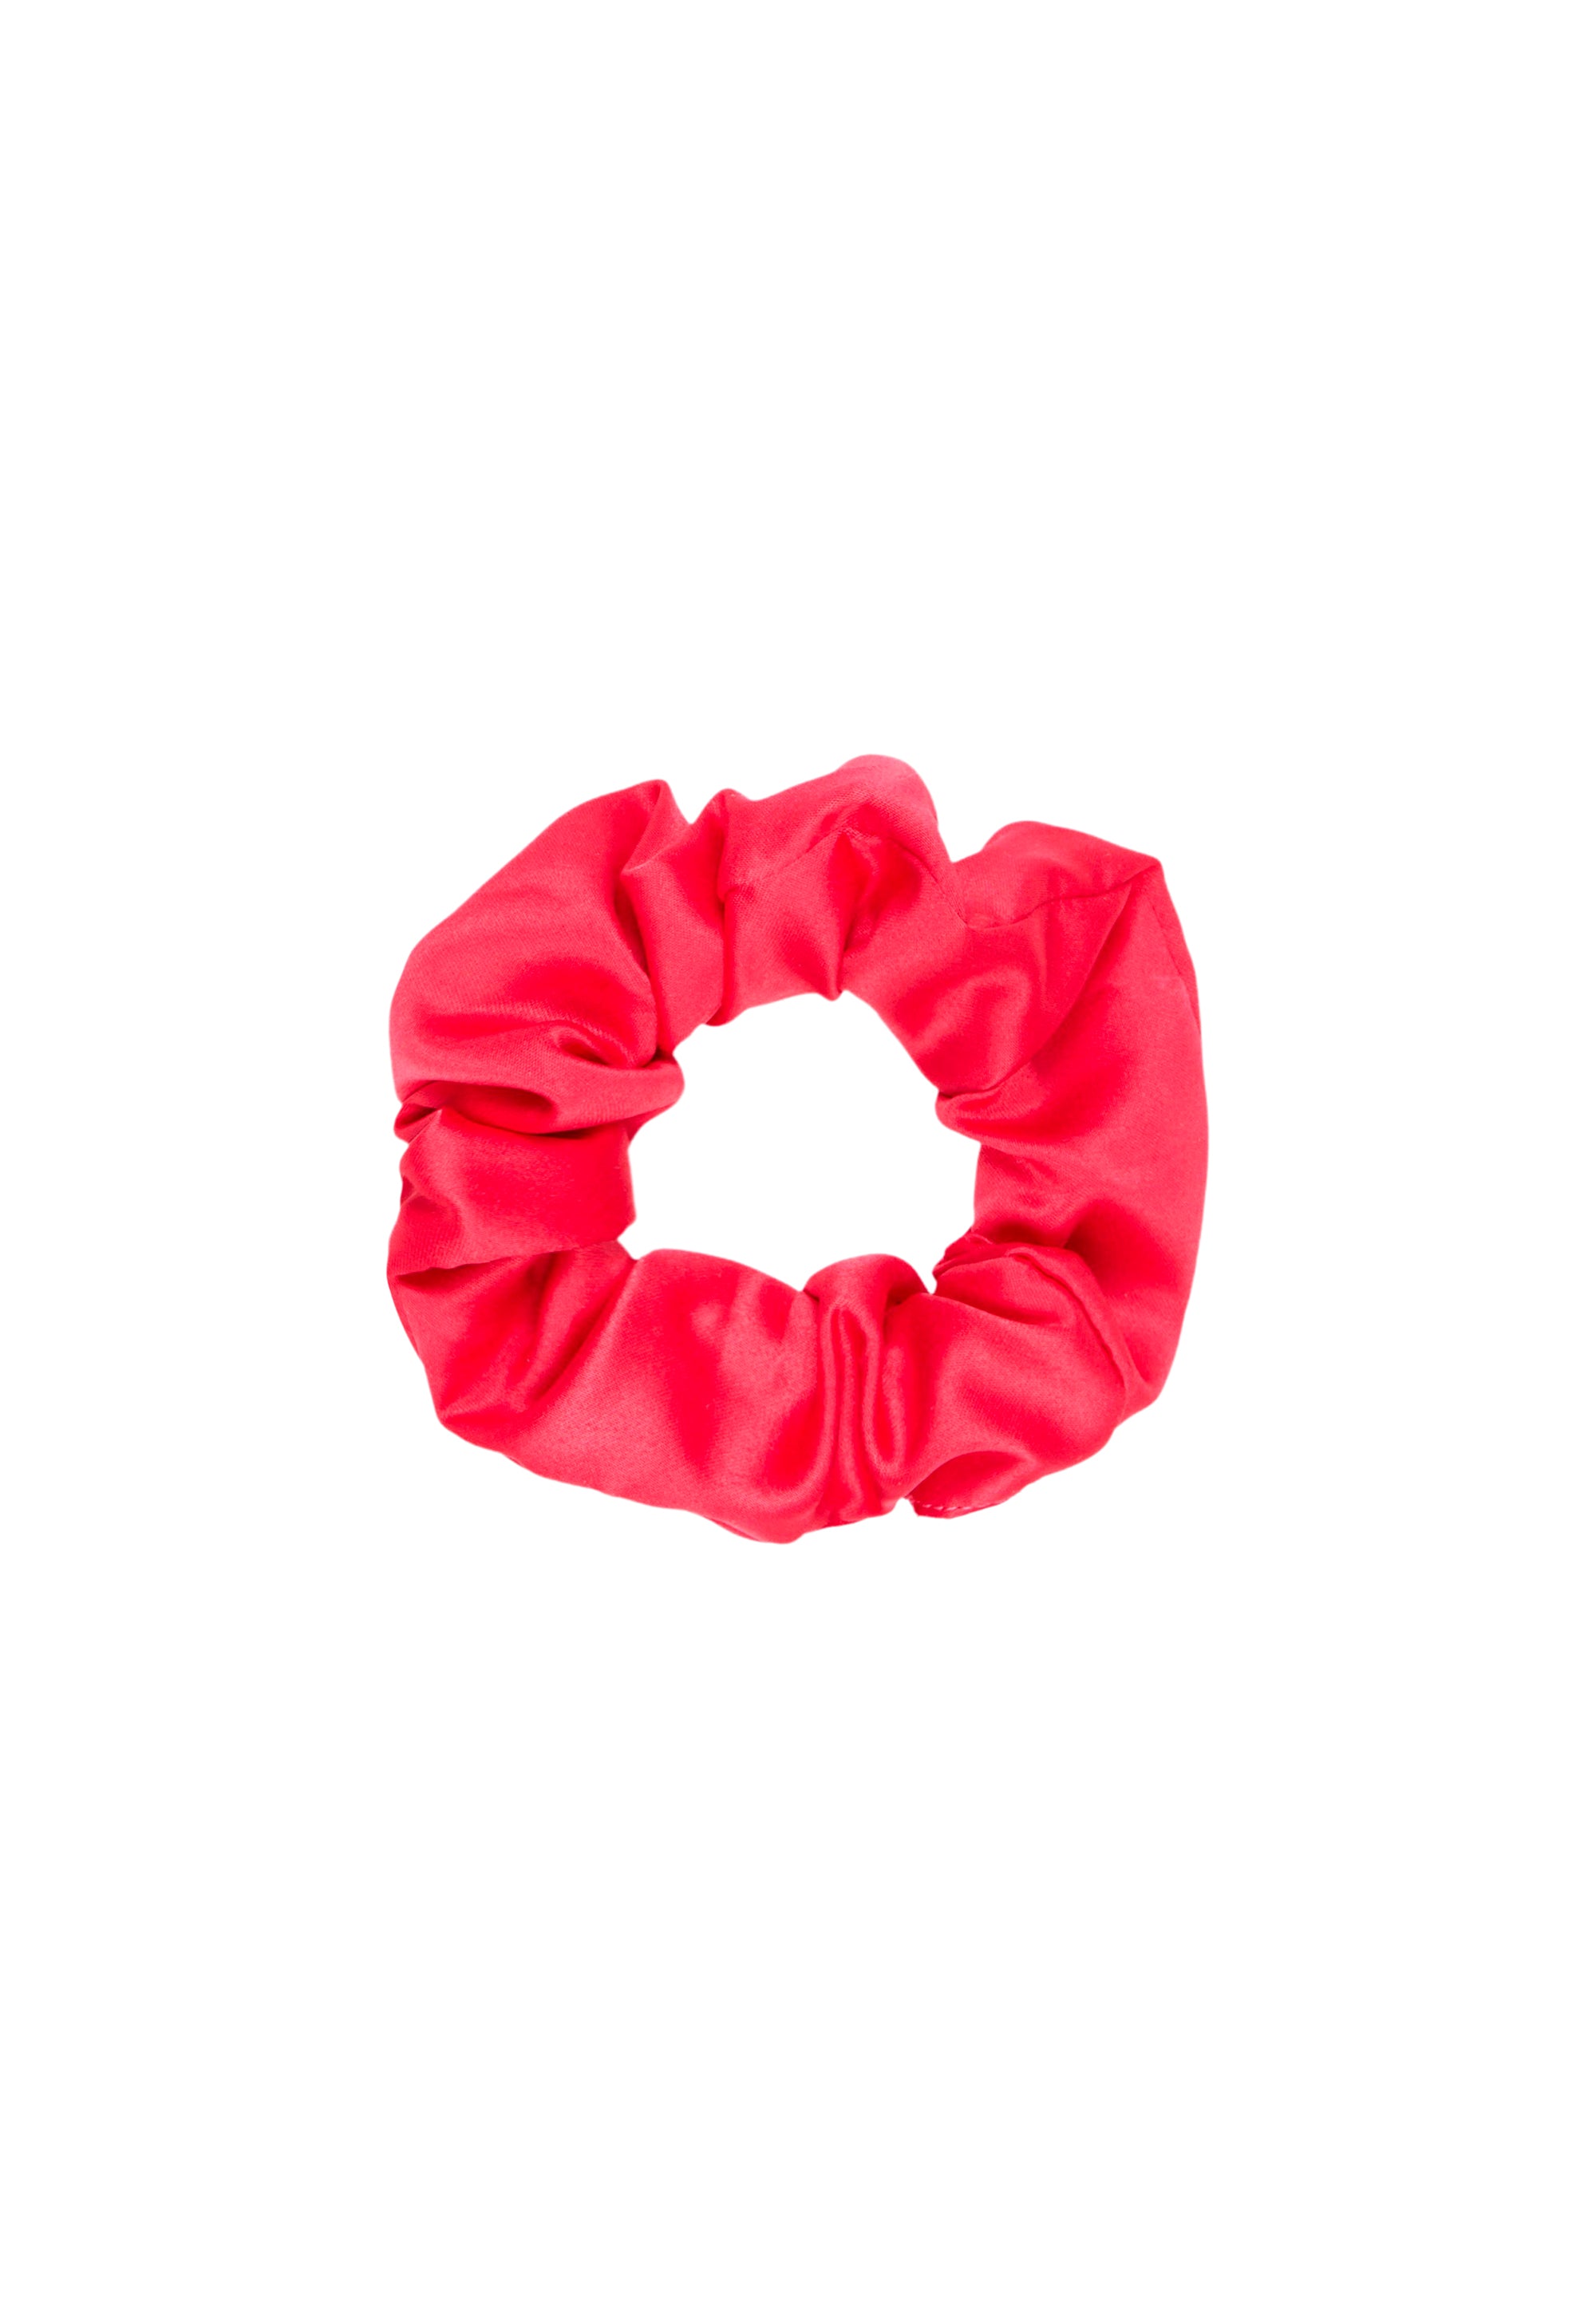 Scrunchie Accessories Rose Red